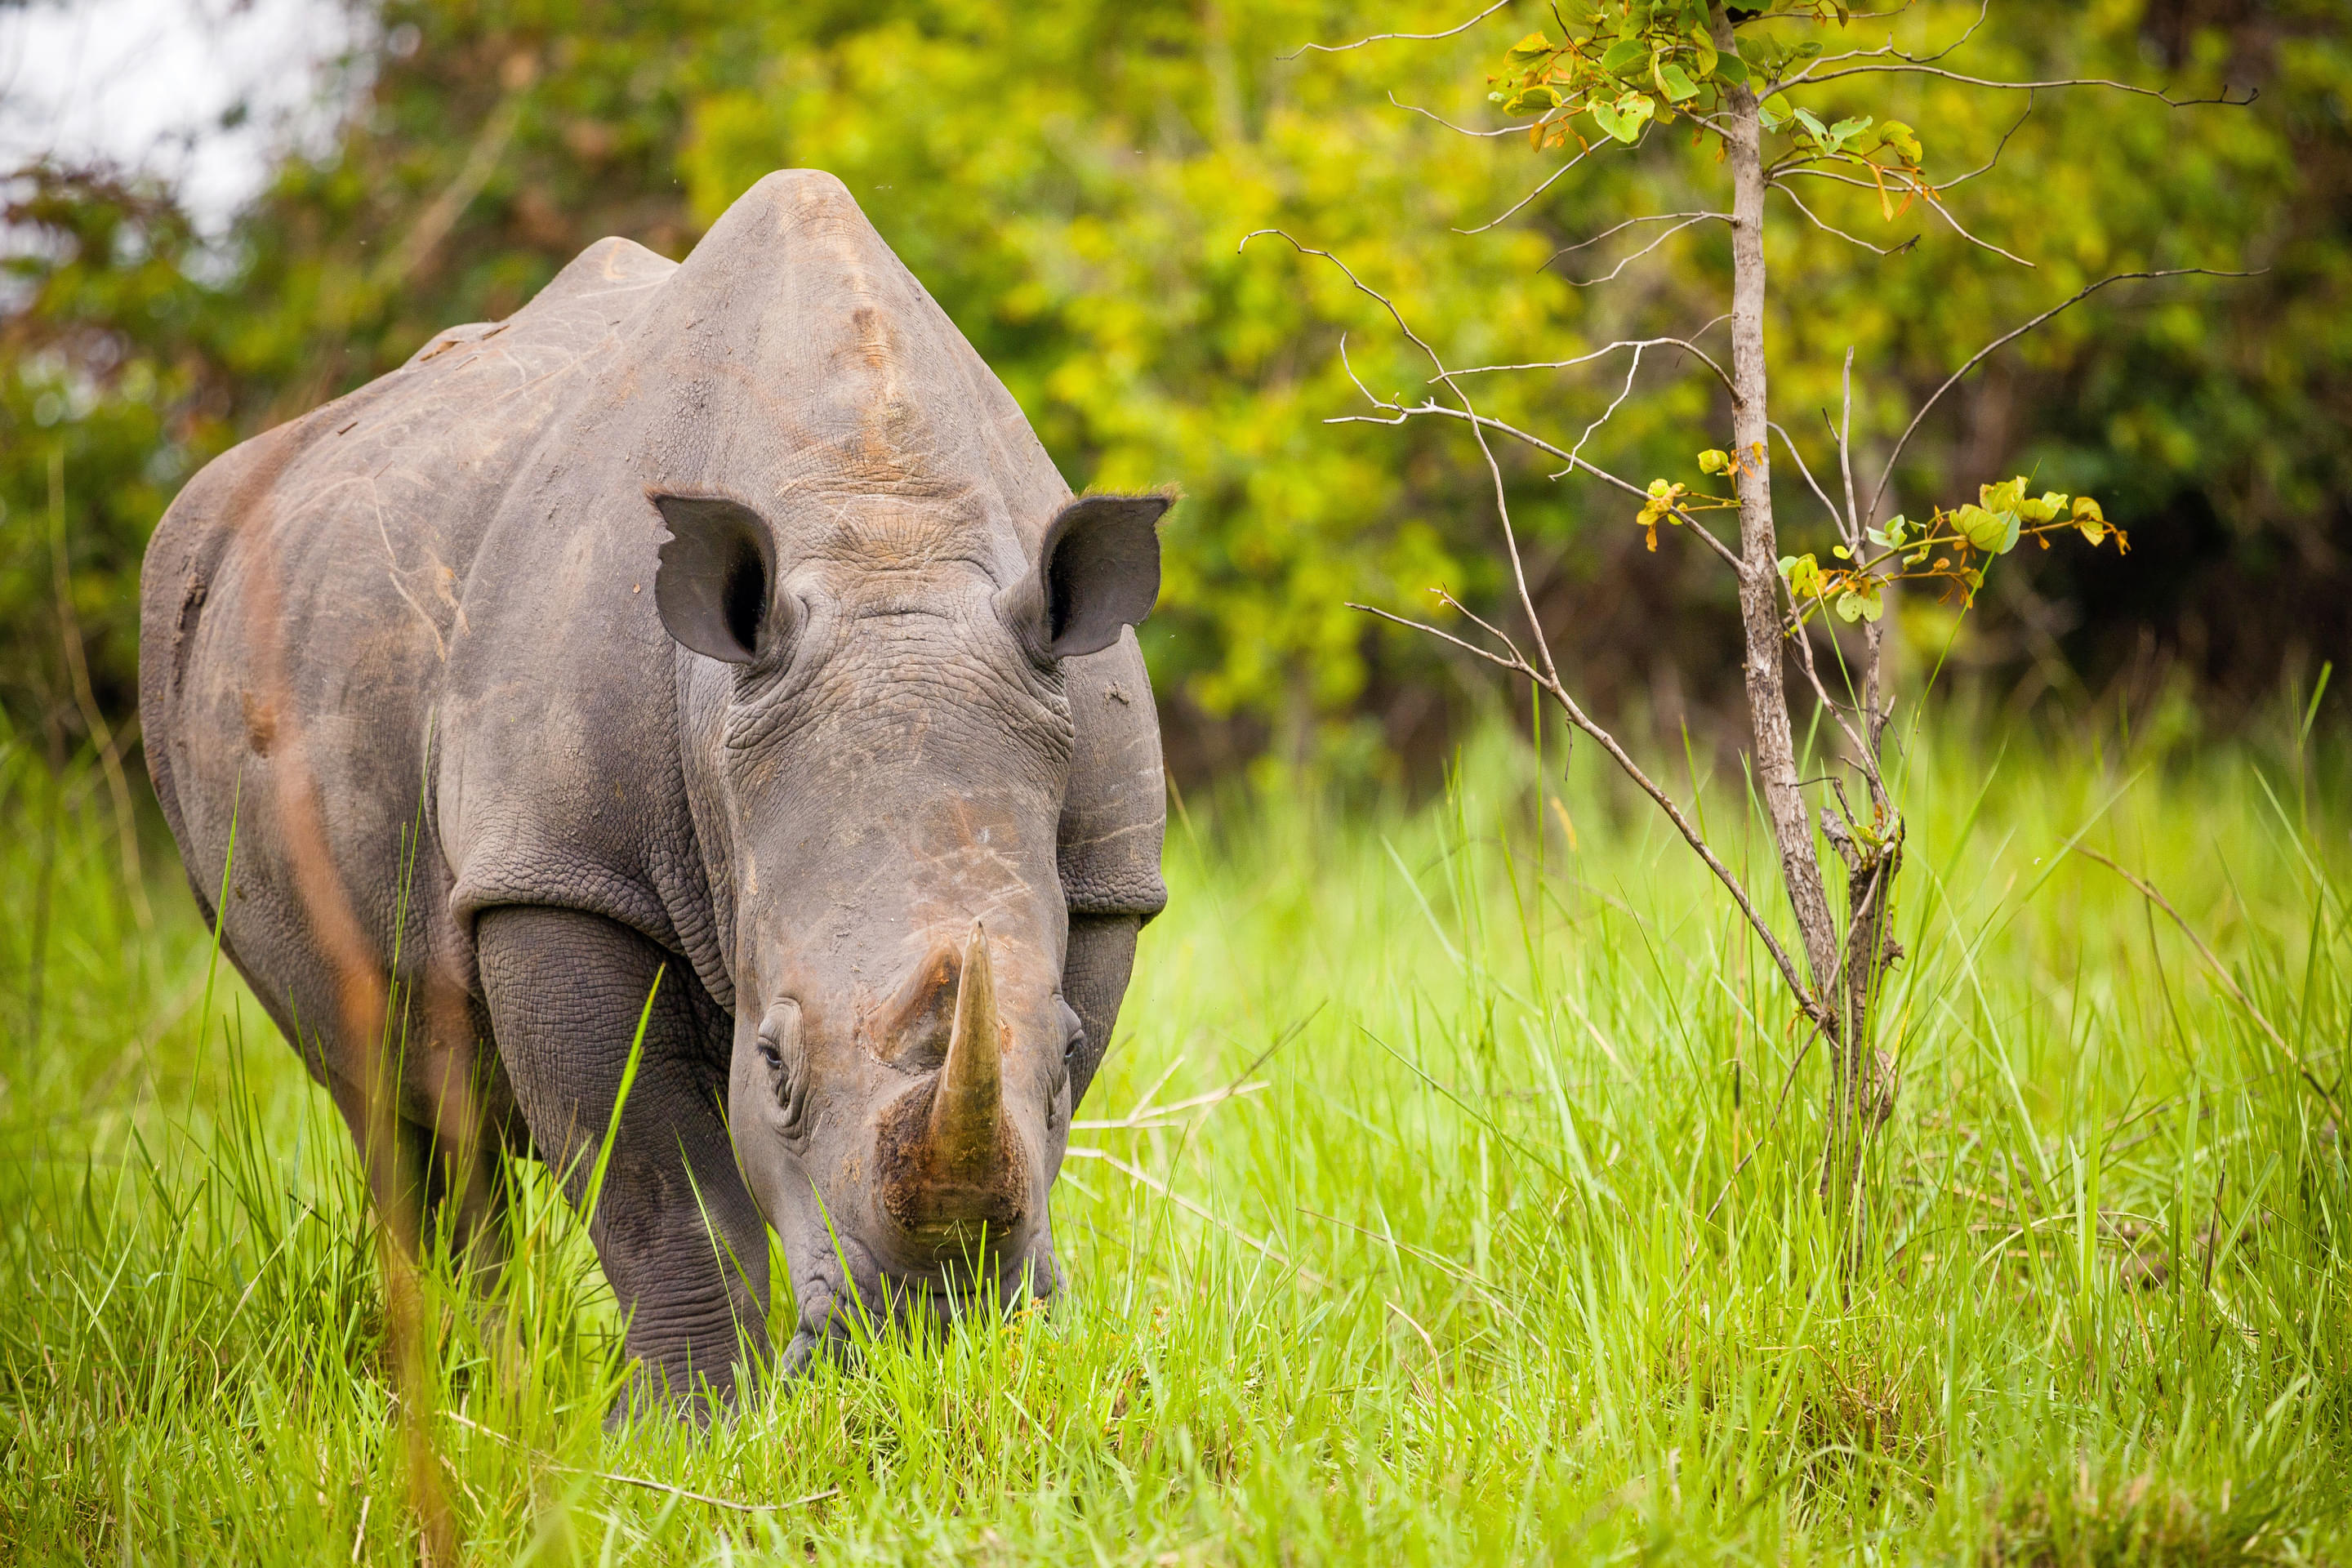 Ziwa Rhino Sanctuary Overview